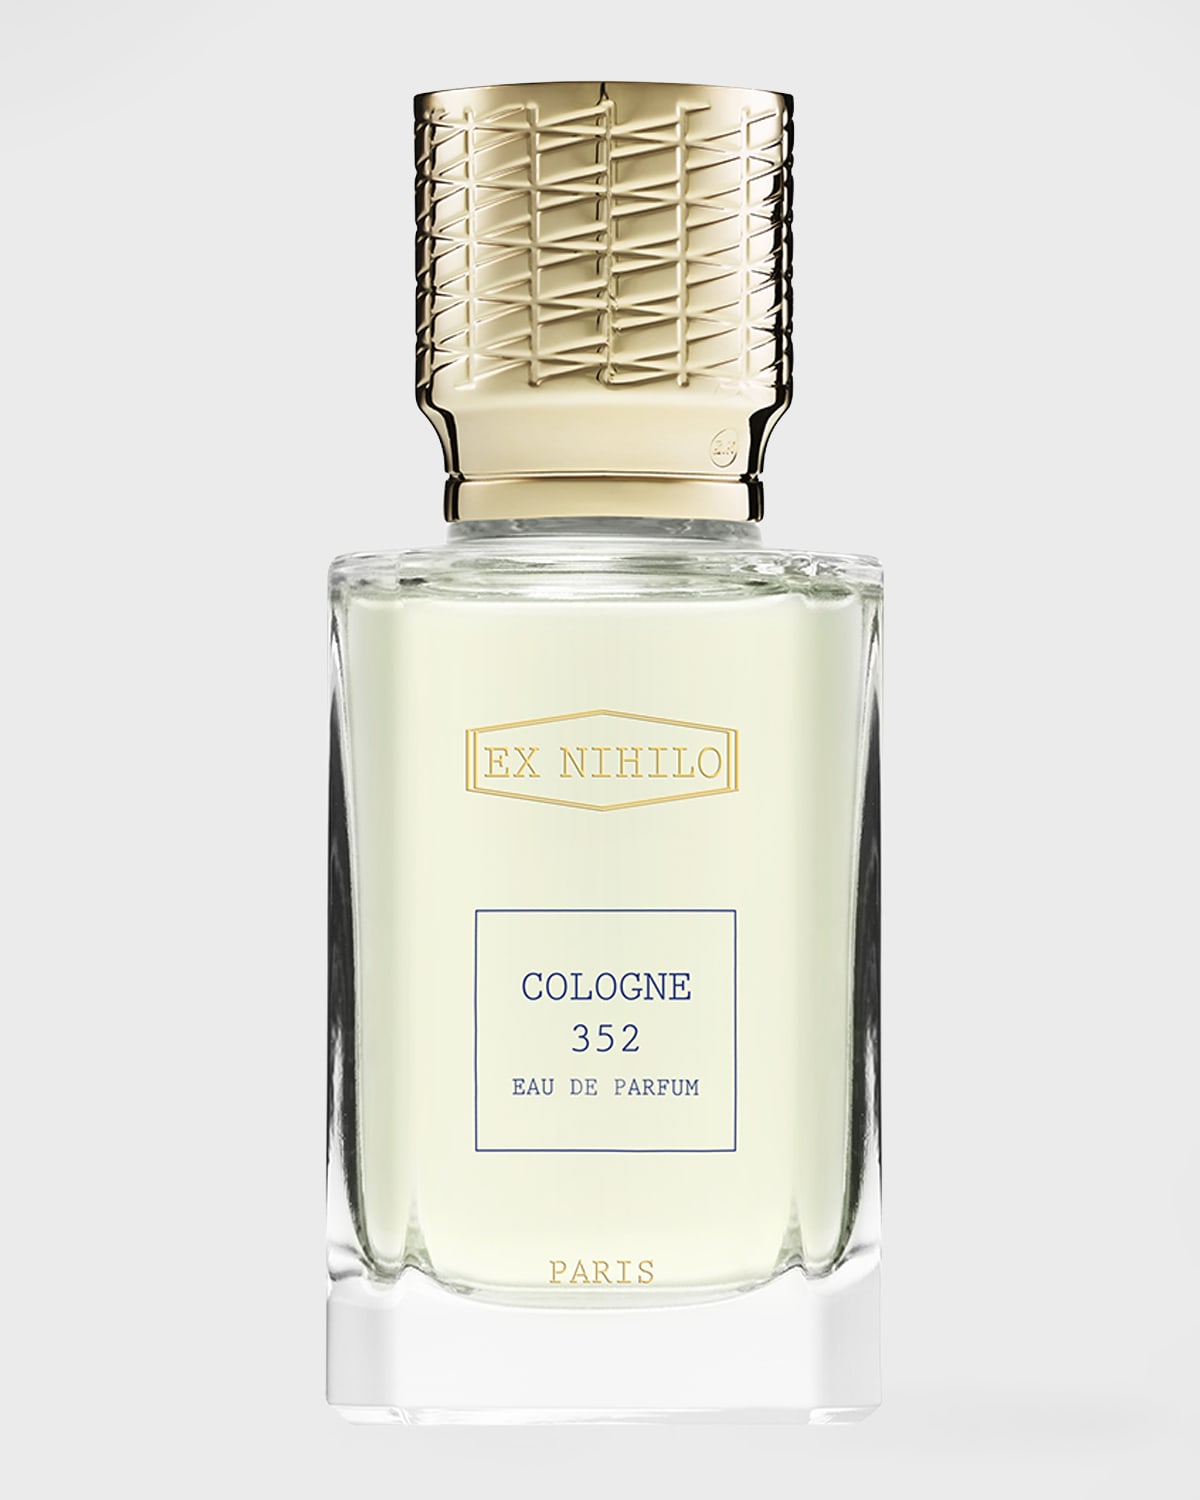 Cologne 352 Eau de Parfum, 1.7 oz./ 50 mL